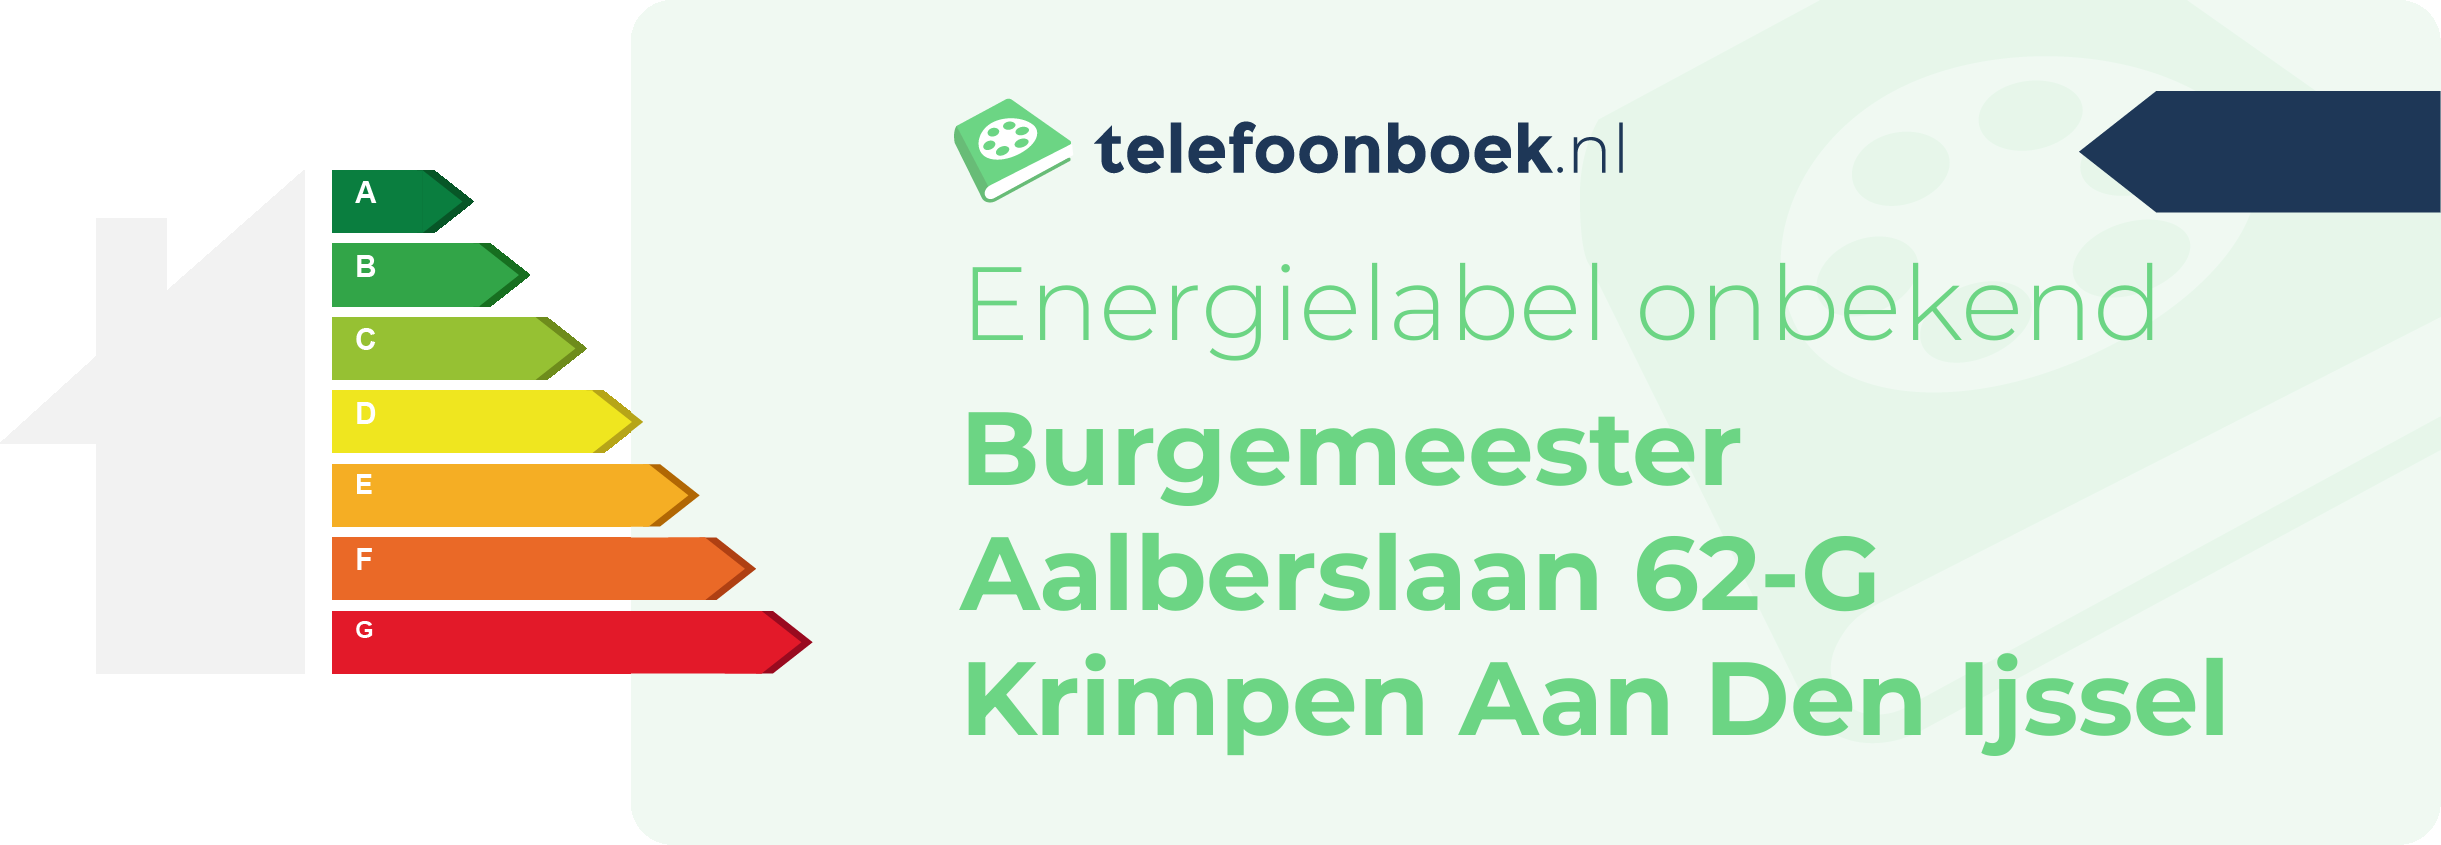 Energielabel Burgemeester Aalberslaan 62-G Krimpen Aan Den Ijssel